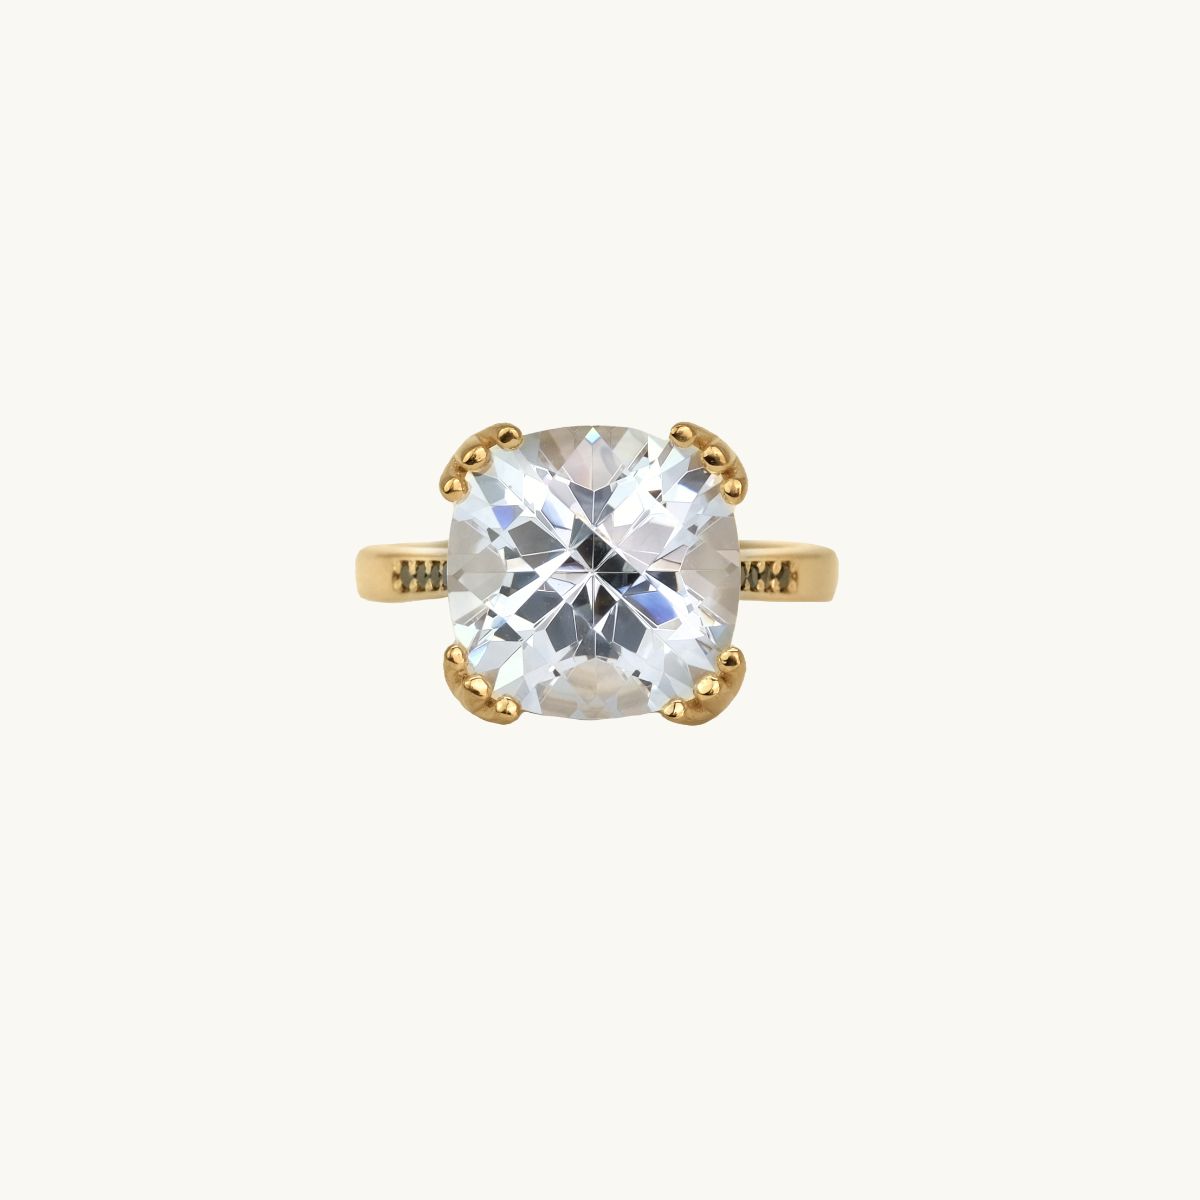 Guldfrgylld ring med stor cz-sten och svarta diamanter